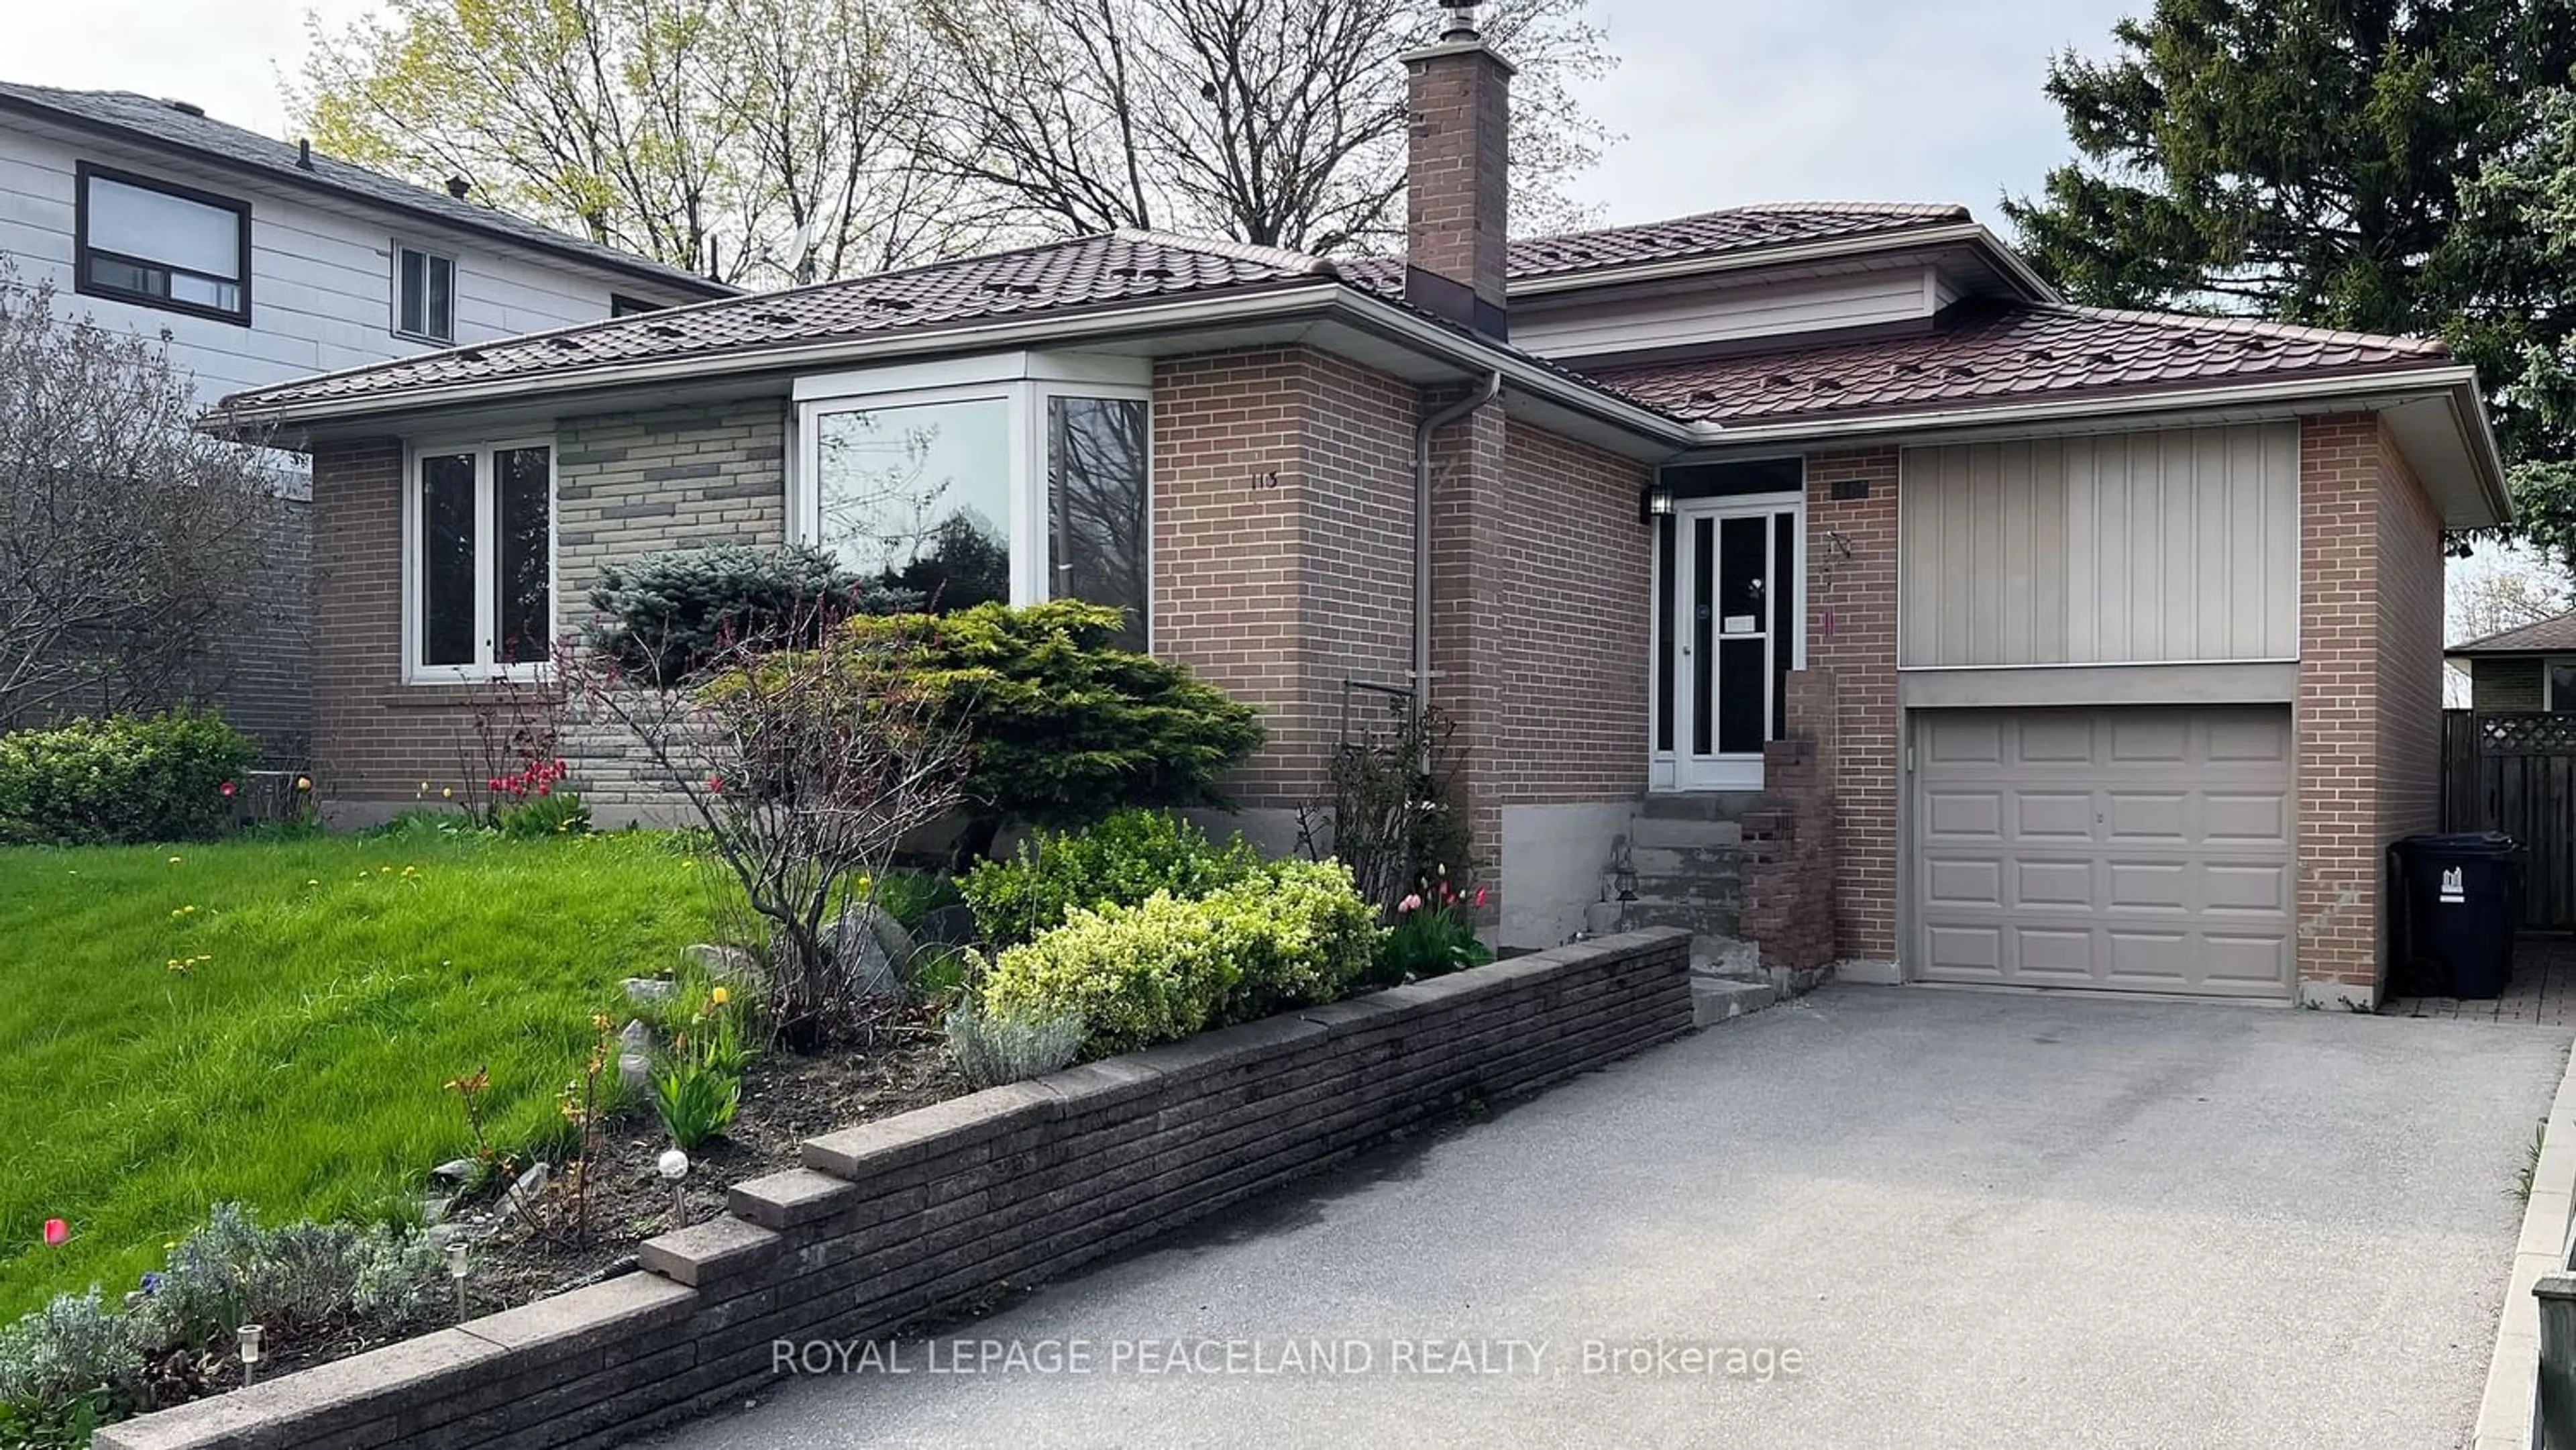 Home with brick exterior material for 113 Cultra Sq, Toronto Ontario M1E 2E4